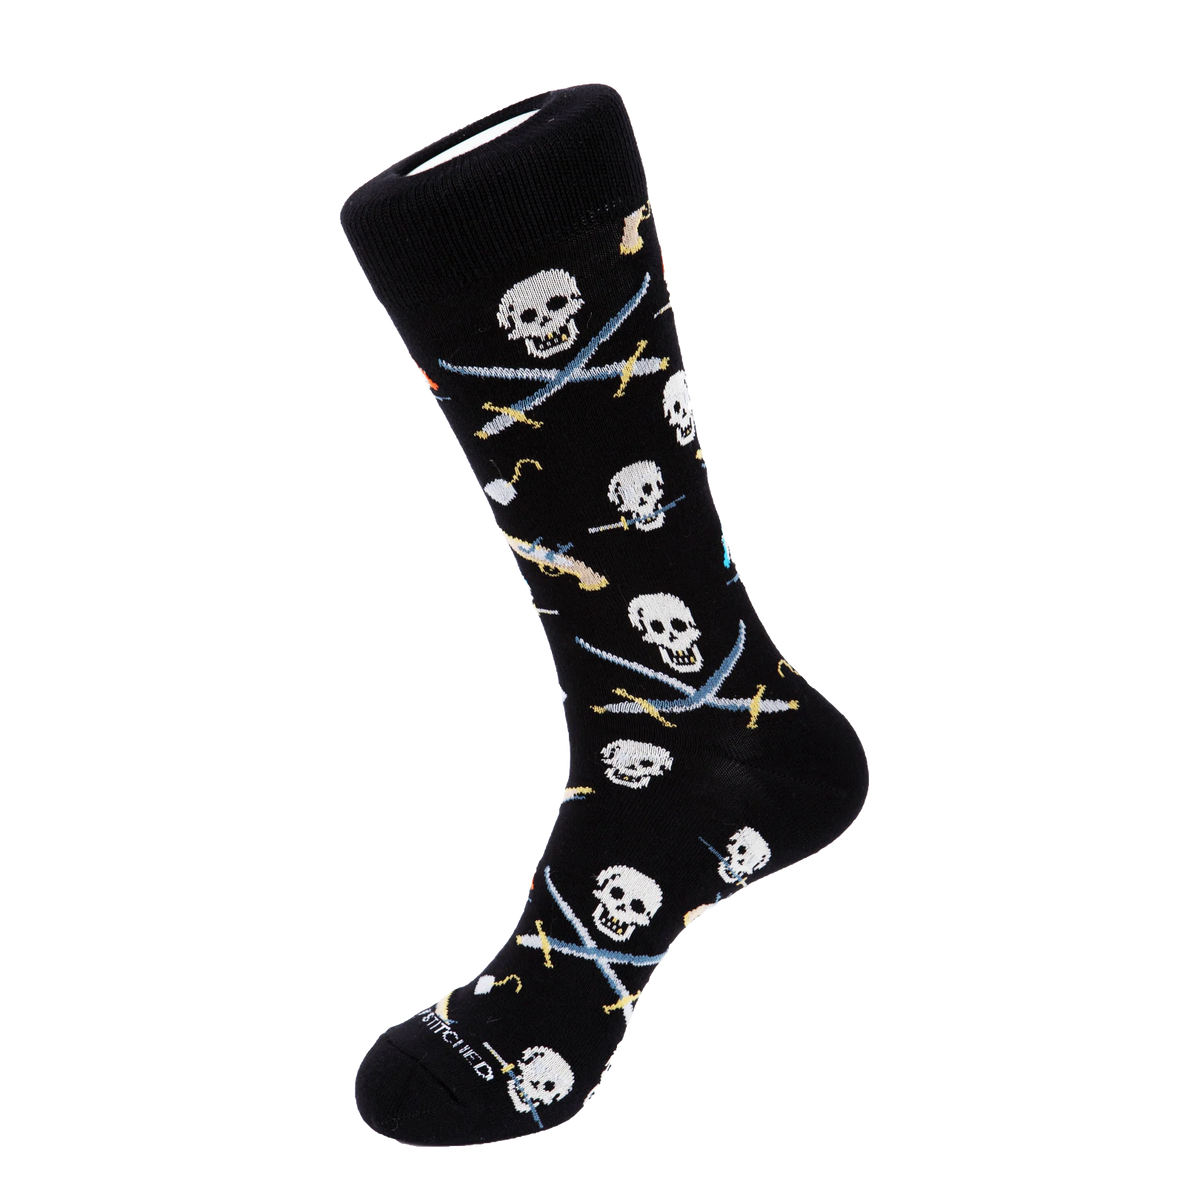 Pirate Booty Socks - Black Skulls